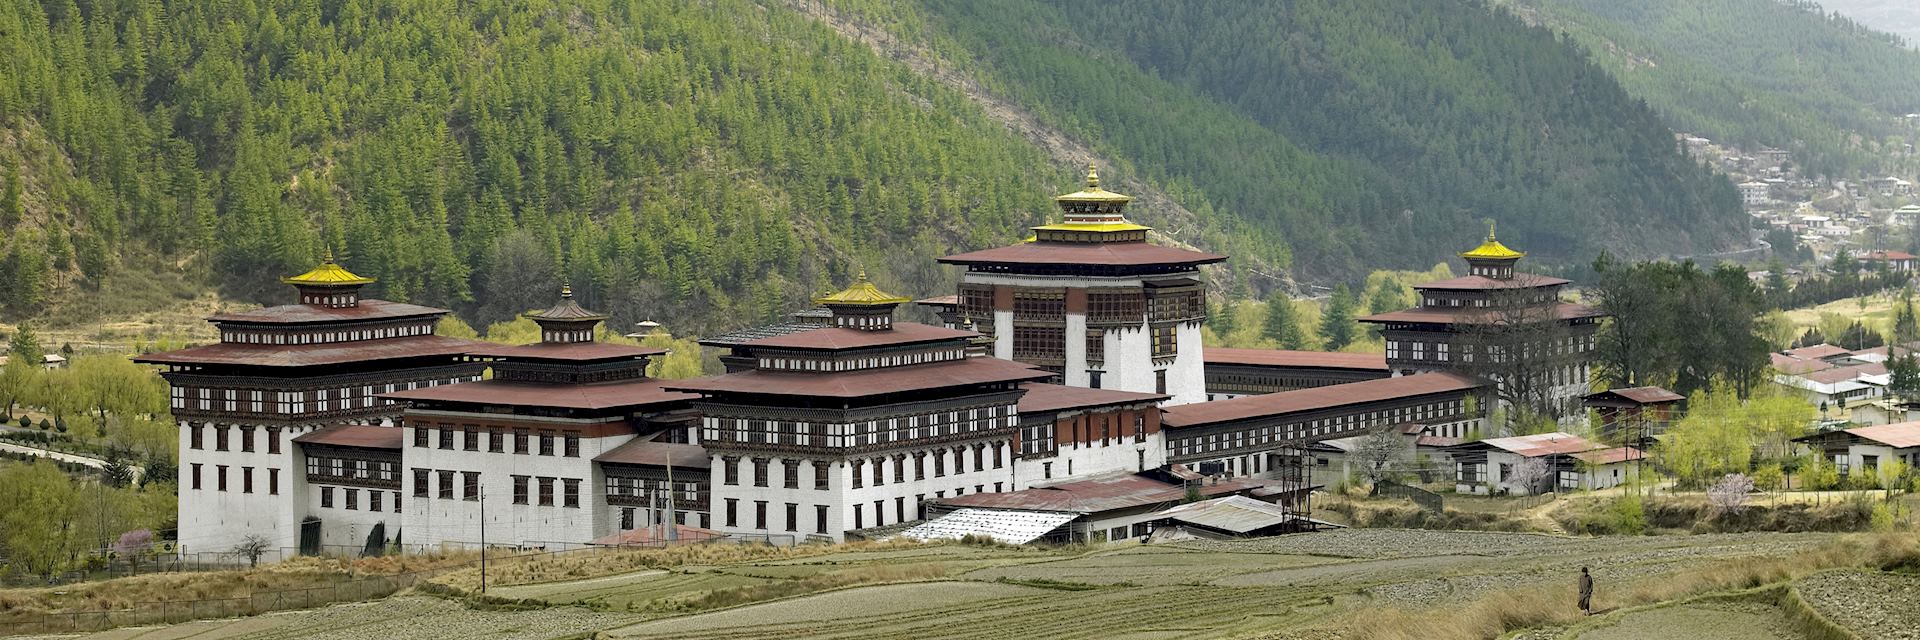 Royal Palace, Thimphu